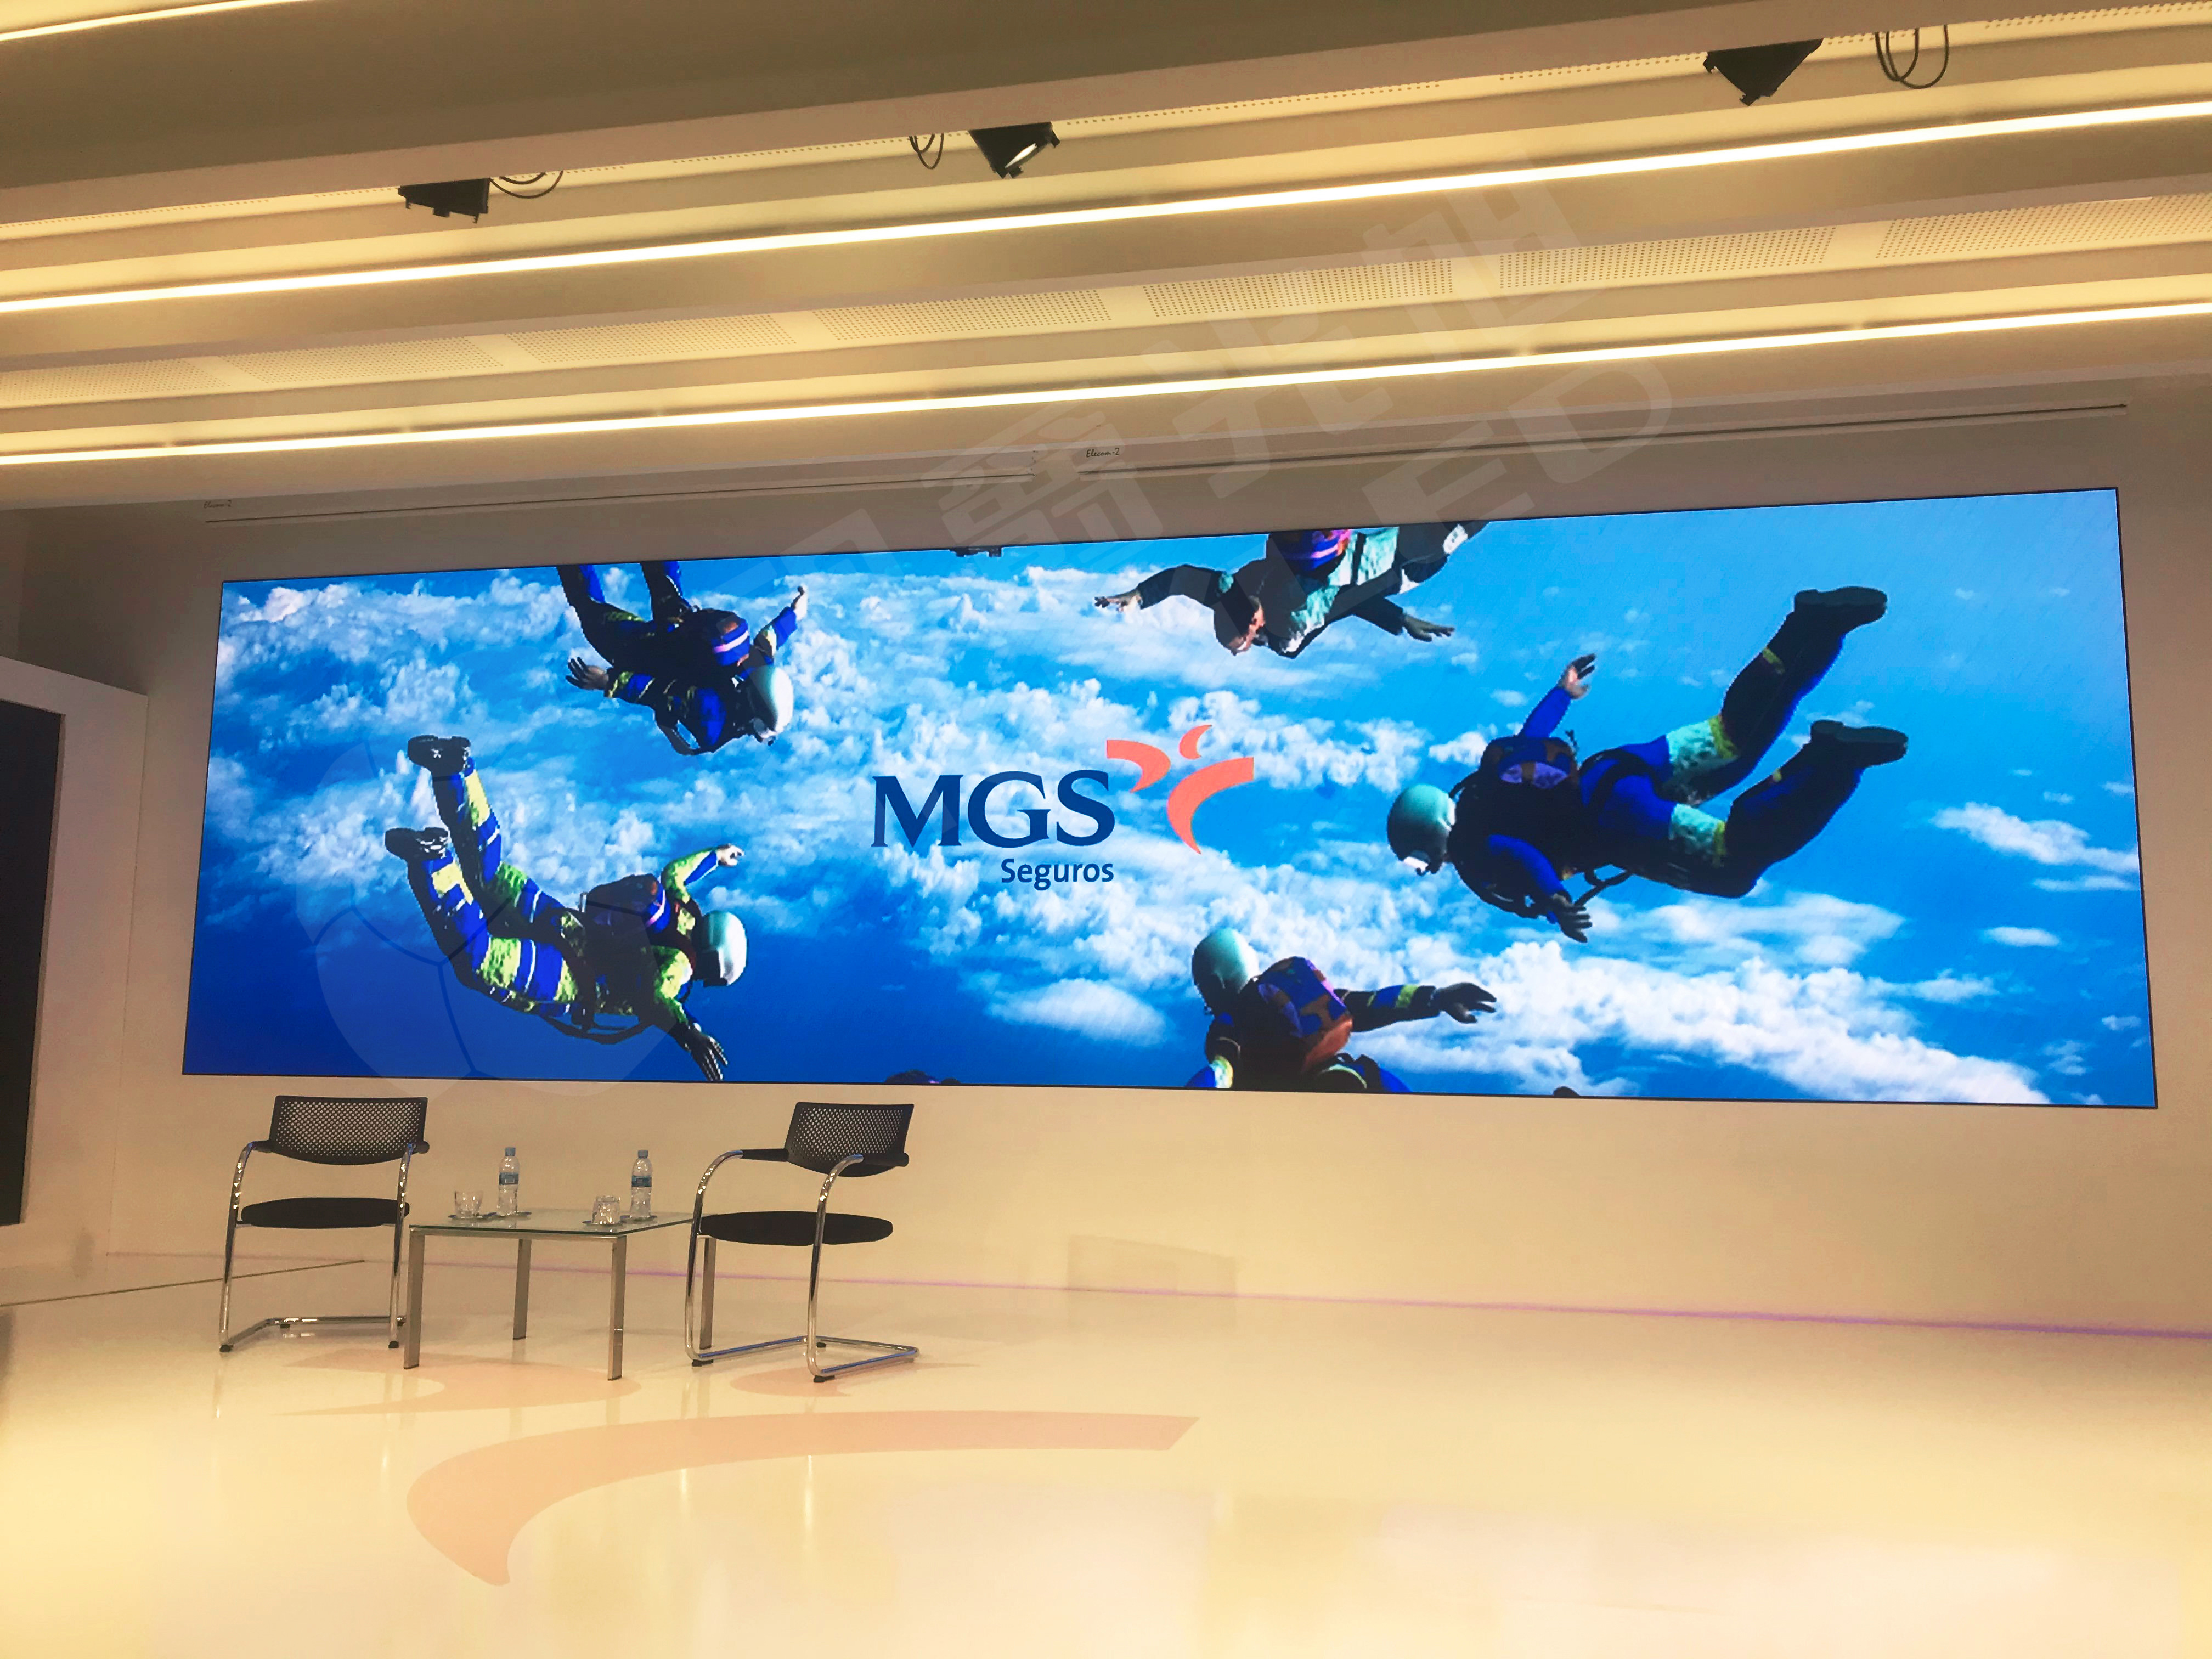 视爵光旭室内小间距LED显示屏助力西班牙MGS公司数字化升级